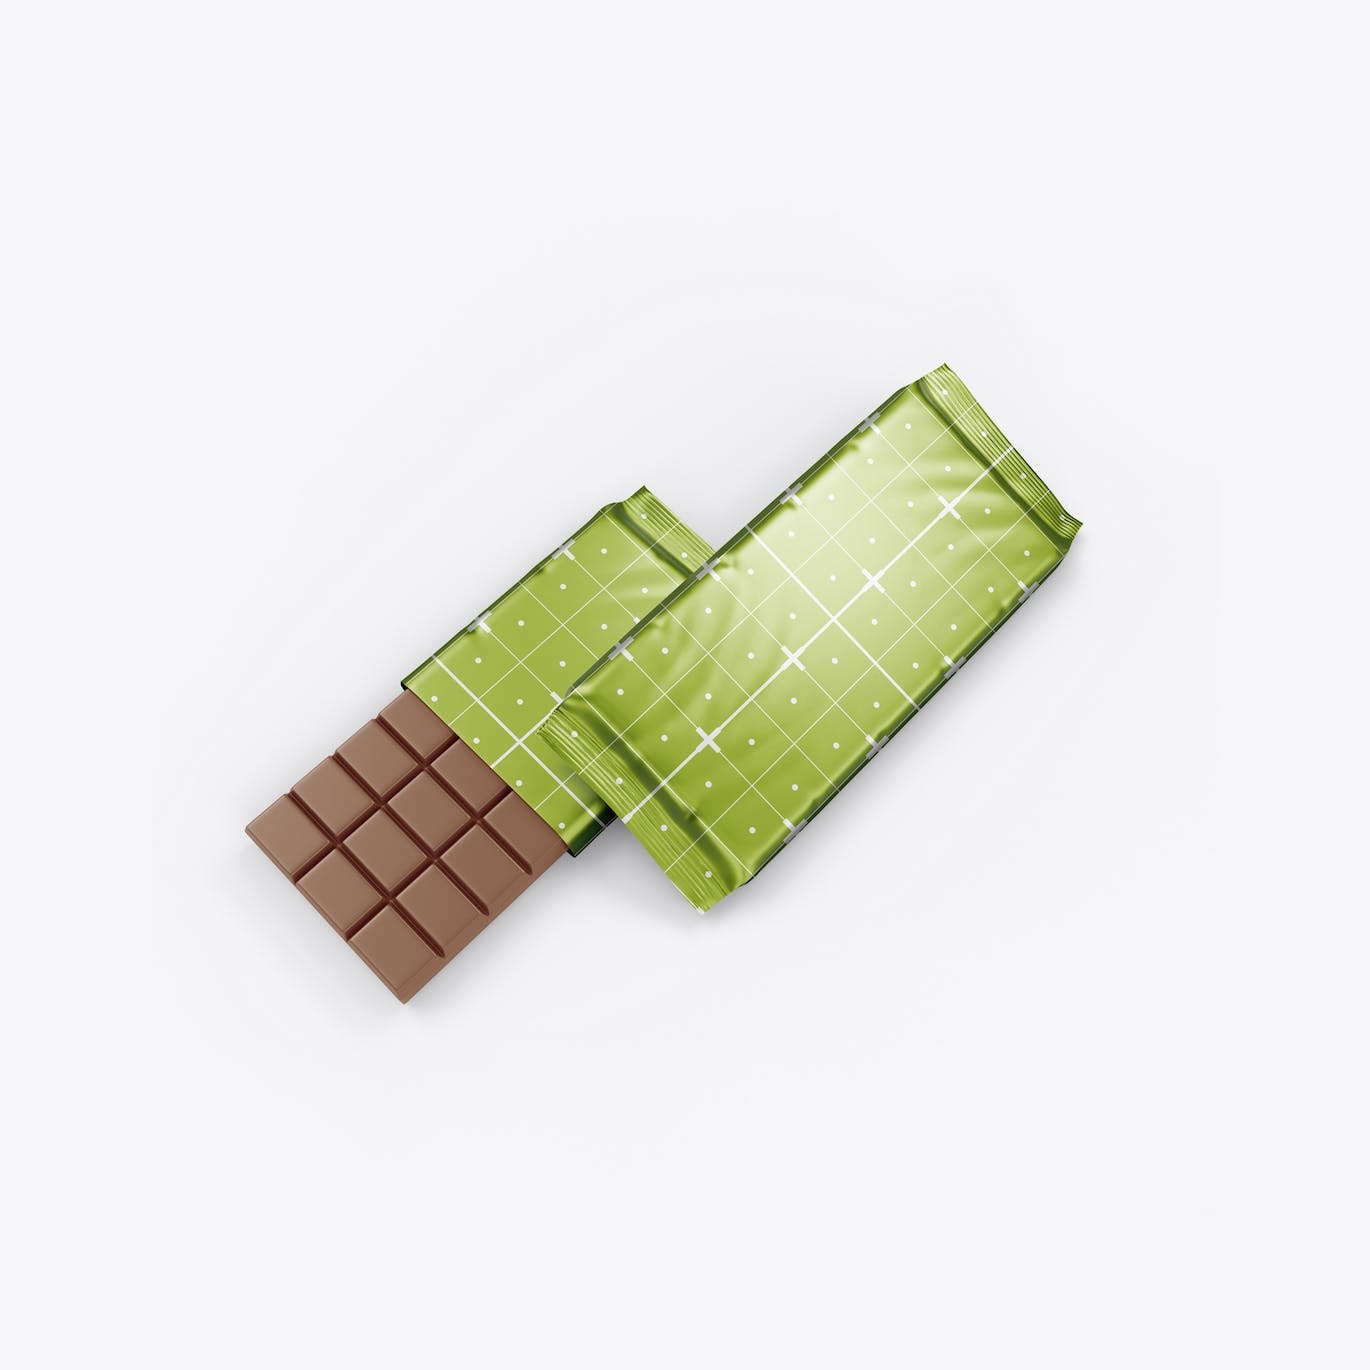 光亮的巧克力棒设计包装样机图 Set Glossy Chocolate Bar Mockup 样机素材 第13张